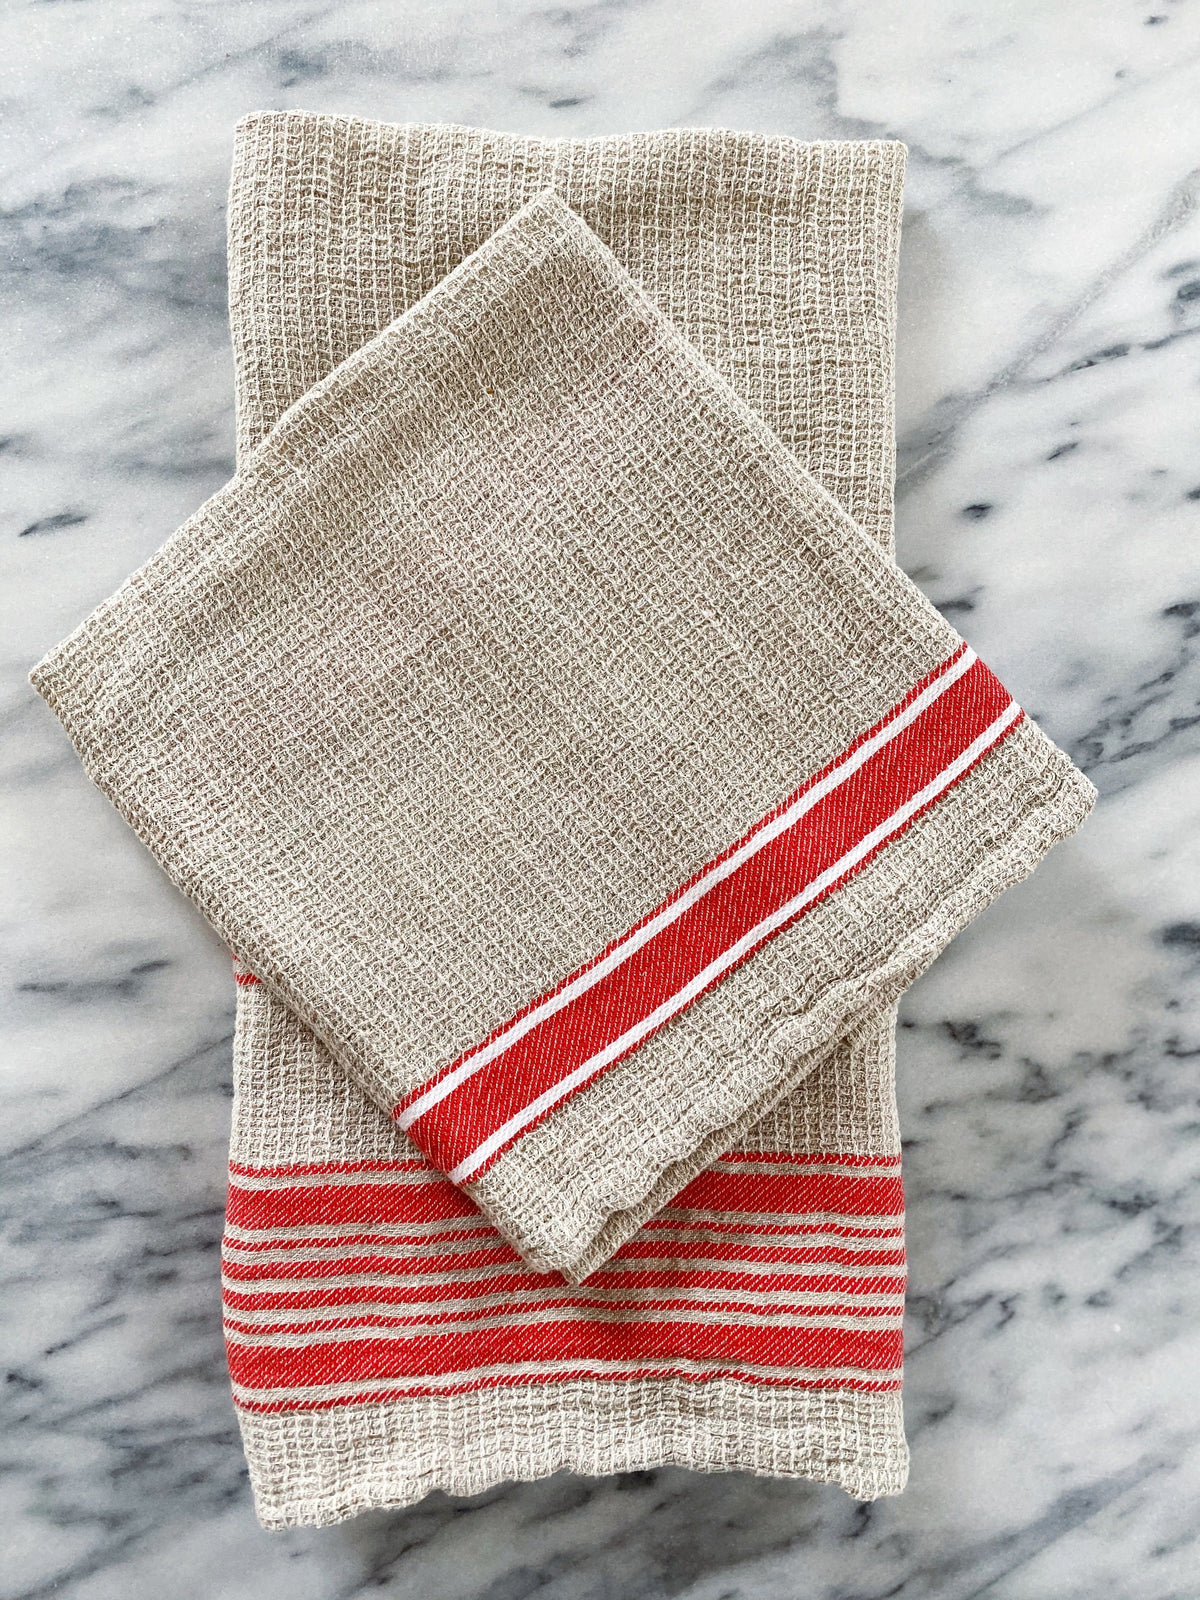 Rustic Savona Linen Kitchen Towel